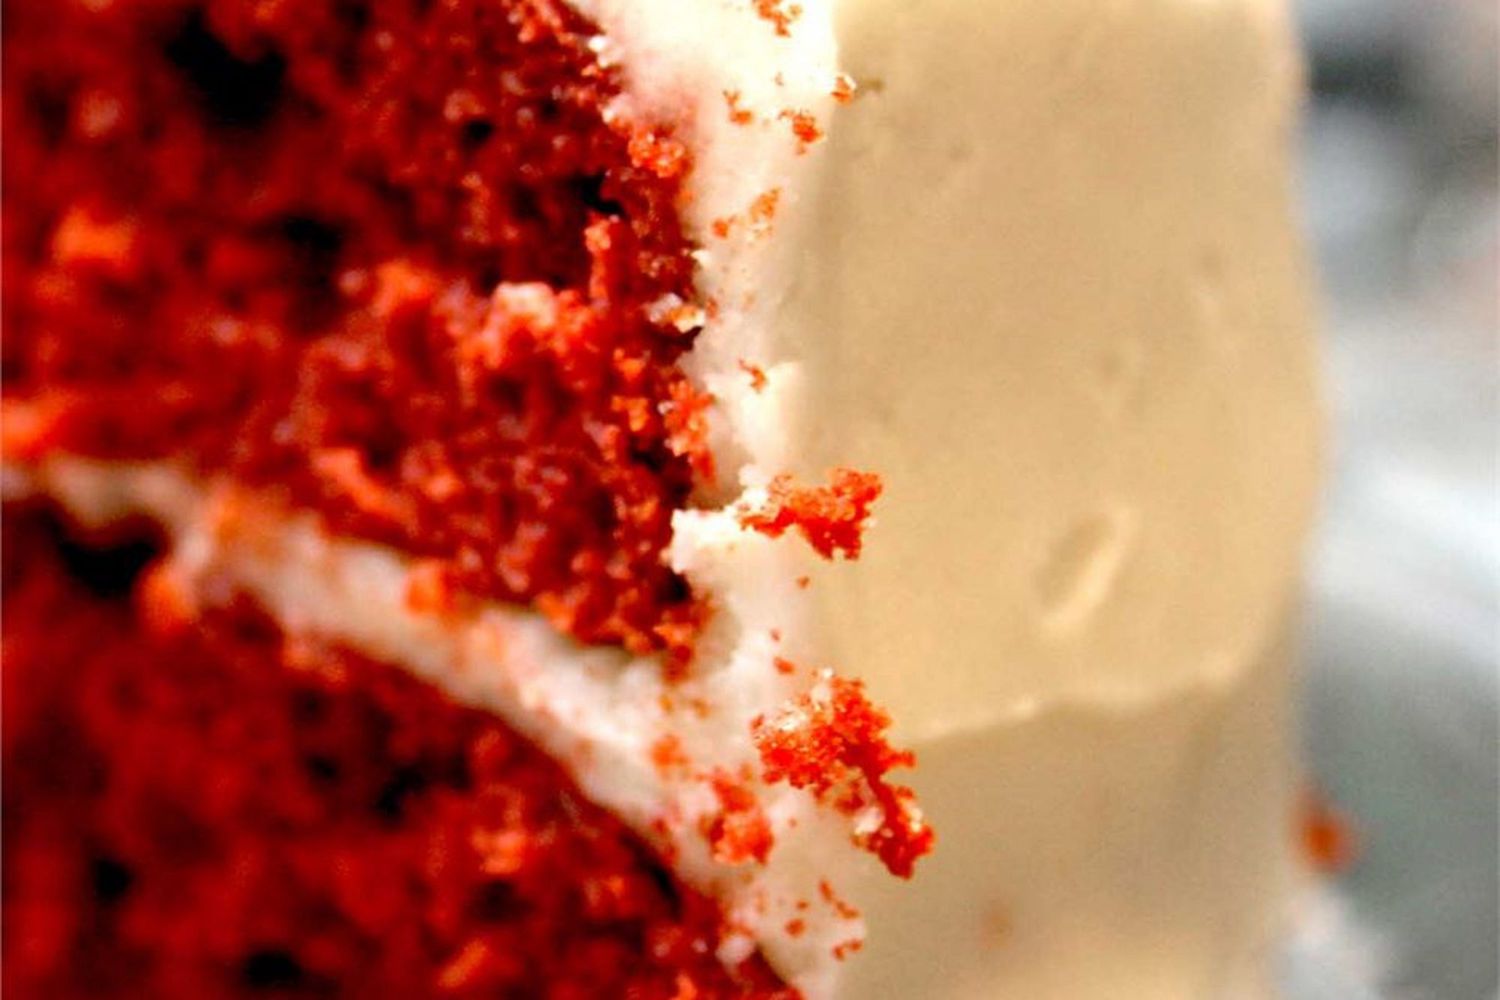 Red Velvet Cake III